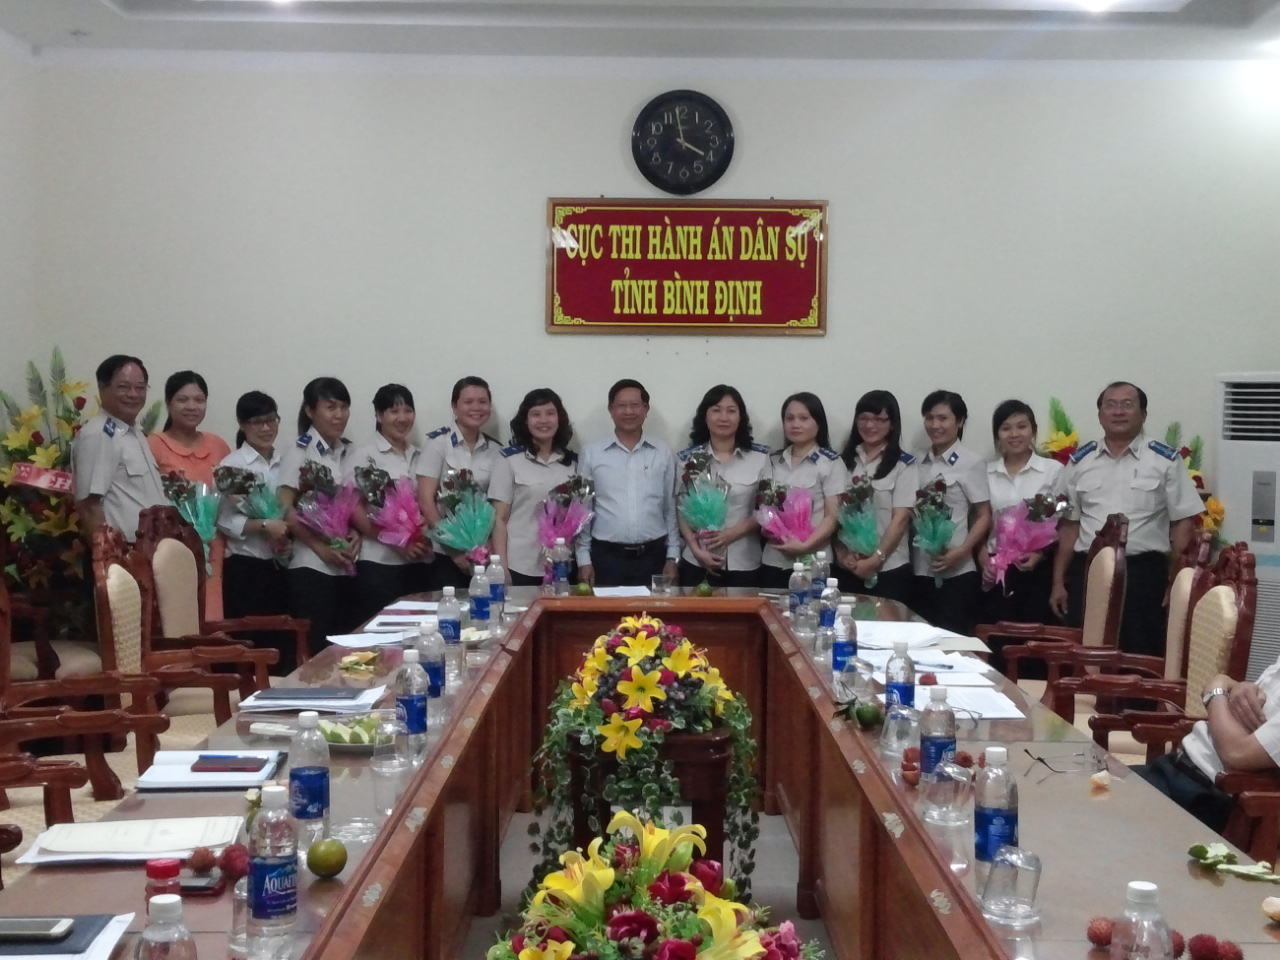 Công đoàn cơ sở Cục THADS Tổ chức các hoạt động kỷ niệm 85 năm ngày thành lập Hội Liên hiệp Phụ nữ Việt Nam (20/10/1930 – 20/10/2015)